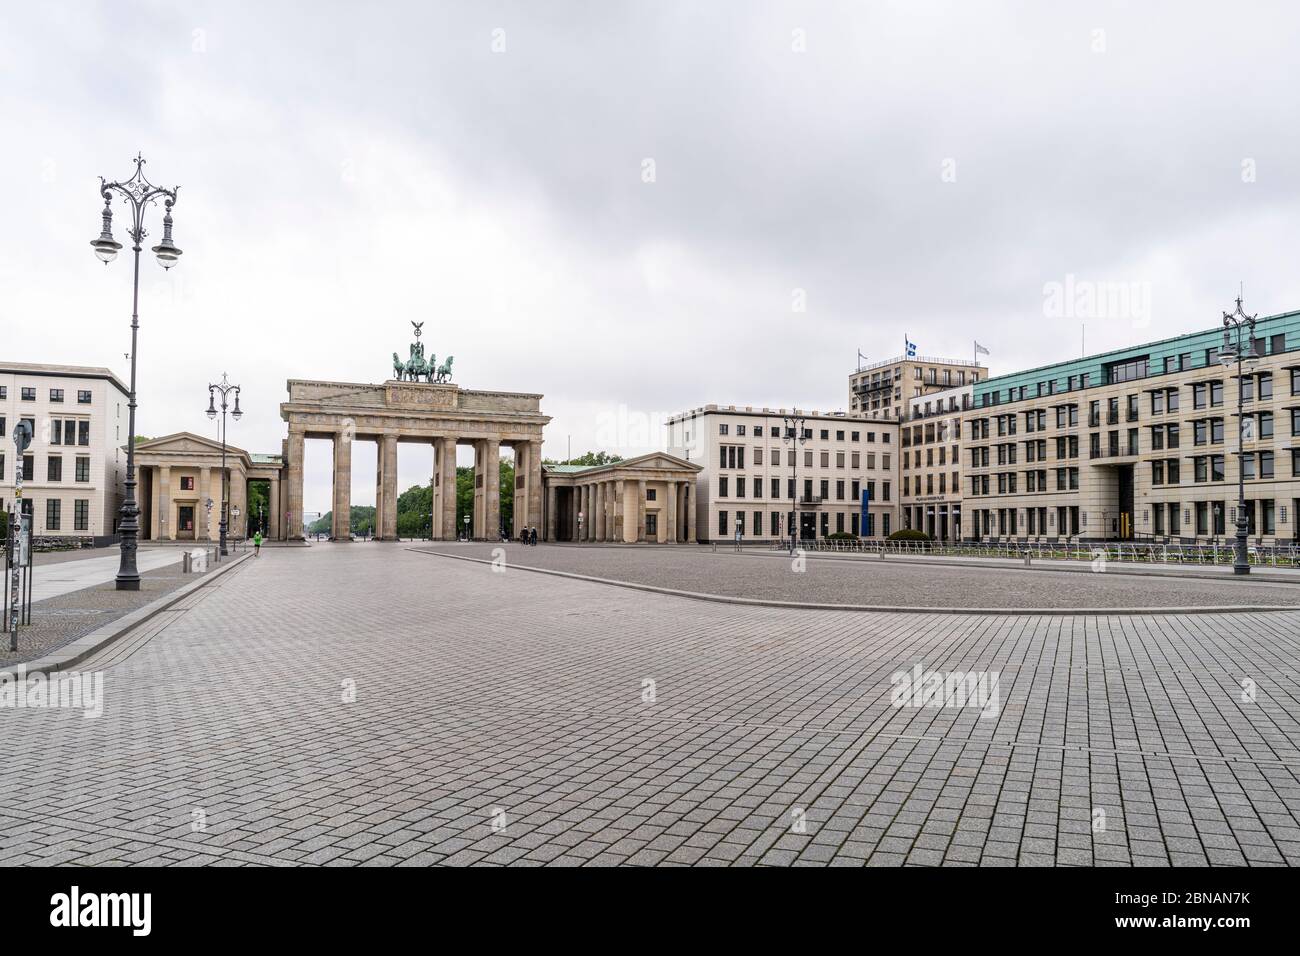 La histórica Puerta de Brandenburgo es un punto de referencia de Berlín, con el espacio público conocido como Pariser Platz en frente, en el centro de Berlín, Alemania Foto de stock